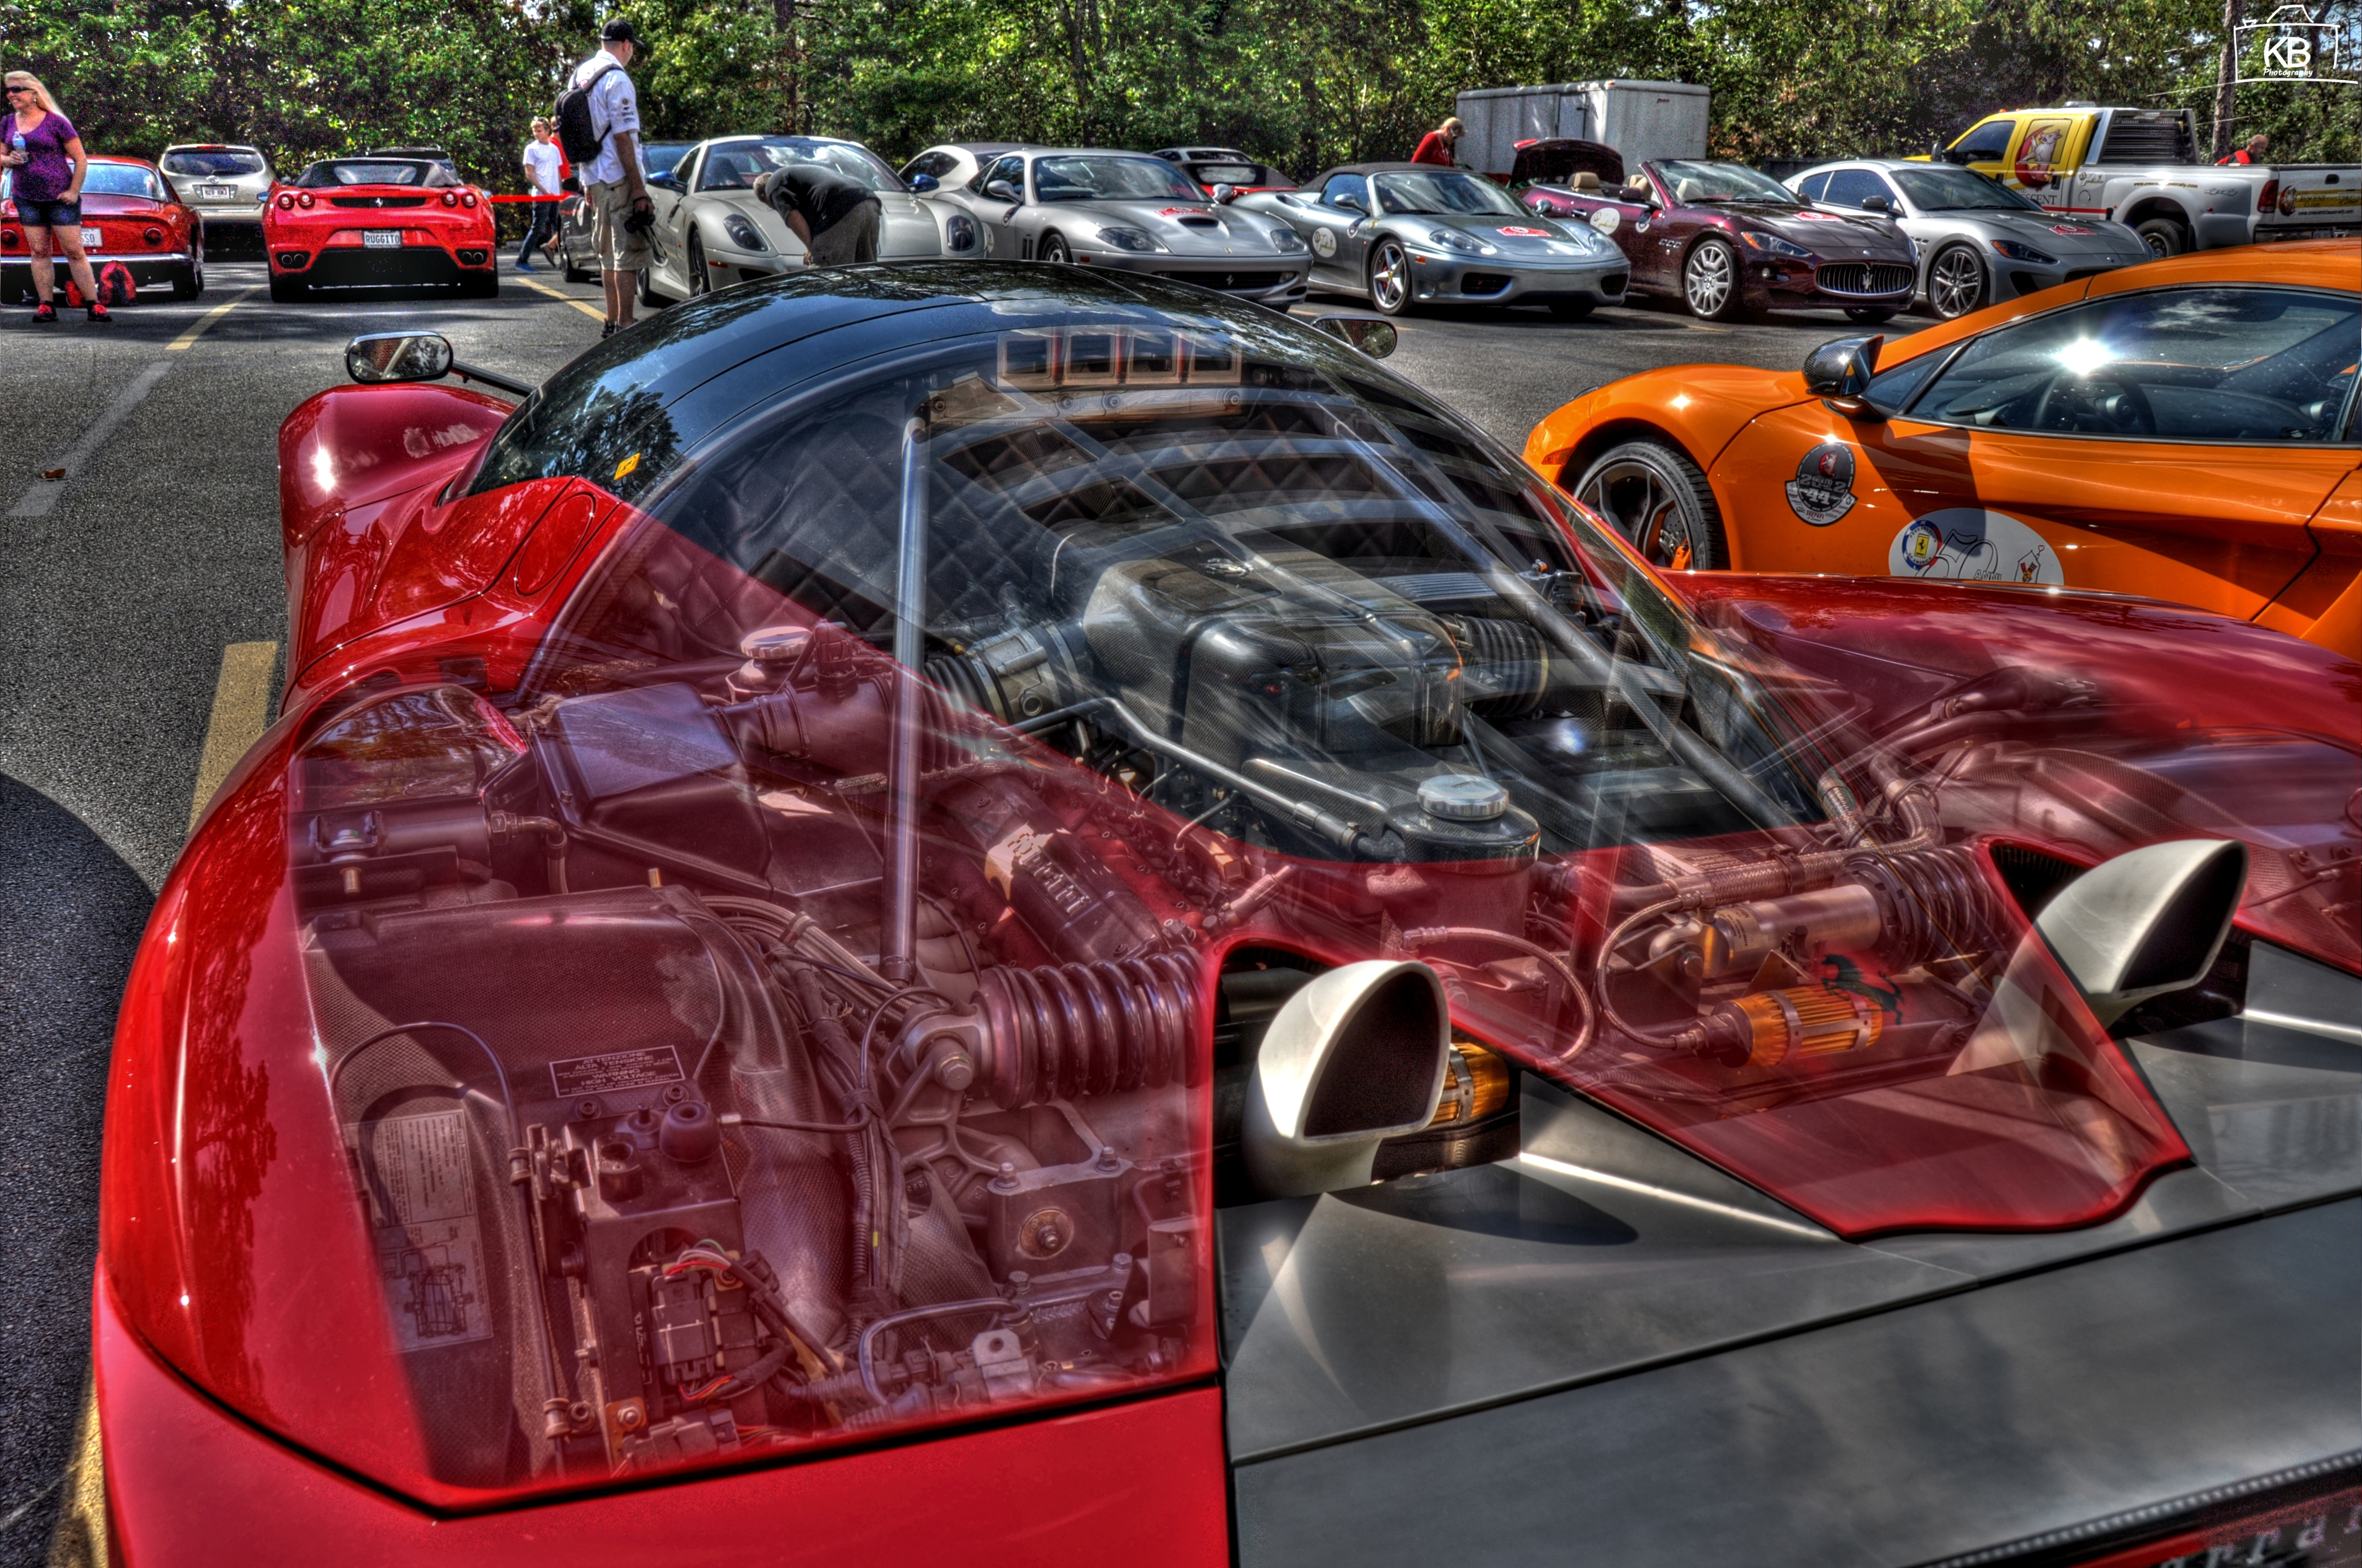 Ferrari Pininfarina P4 5 Concept Backgrounds on Wallpapers Vista